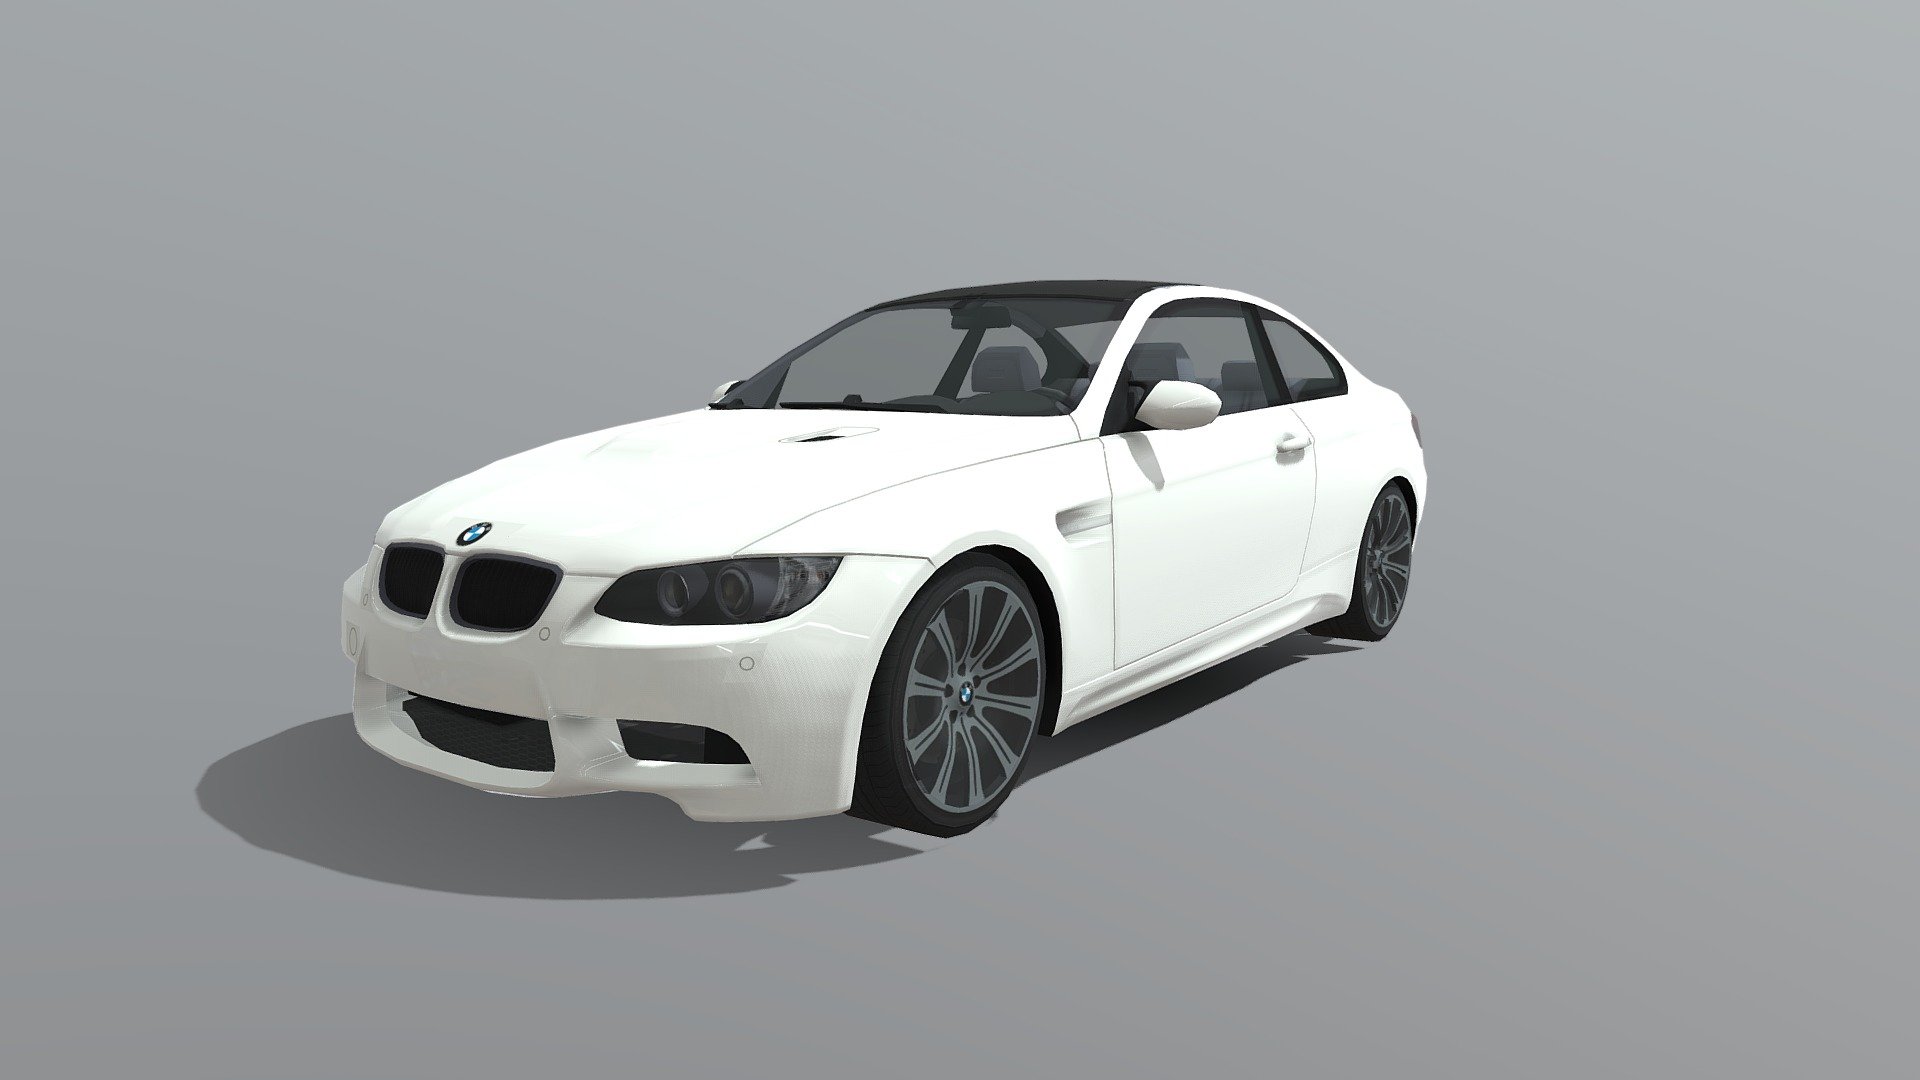 Спортивные версии автомобилей BMW 3 серии от дочерней компании BMW M GmbH.

Основными отличиями от «стандартных» автомобилей BMW 3 серии являются более мощный двигатель, улучшенная подвеска, изменённый дизайн, множественные акценты как в интерьере, так и в экстерьере, указывающие на принадлежность к линейке «M»/Motorsport.

Выпускаются с 1986 года. Первая версия BMW M3 (E30) была запущена в 1986 году и предлагалась только как двухдверный седан. С середины 1988 года M3 также предлагался как кабриолет.

Осенью 1992 года была представлена версия-преемник на базе E36, двухдверный вариант 3-й серии впервые стал называться купе. С 1994 года он также был доступен в виде четырехдверного седана и кабриолета 3d model